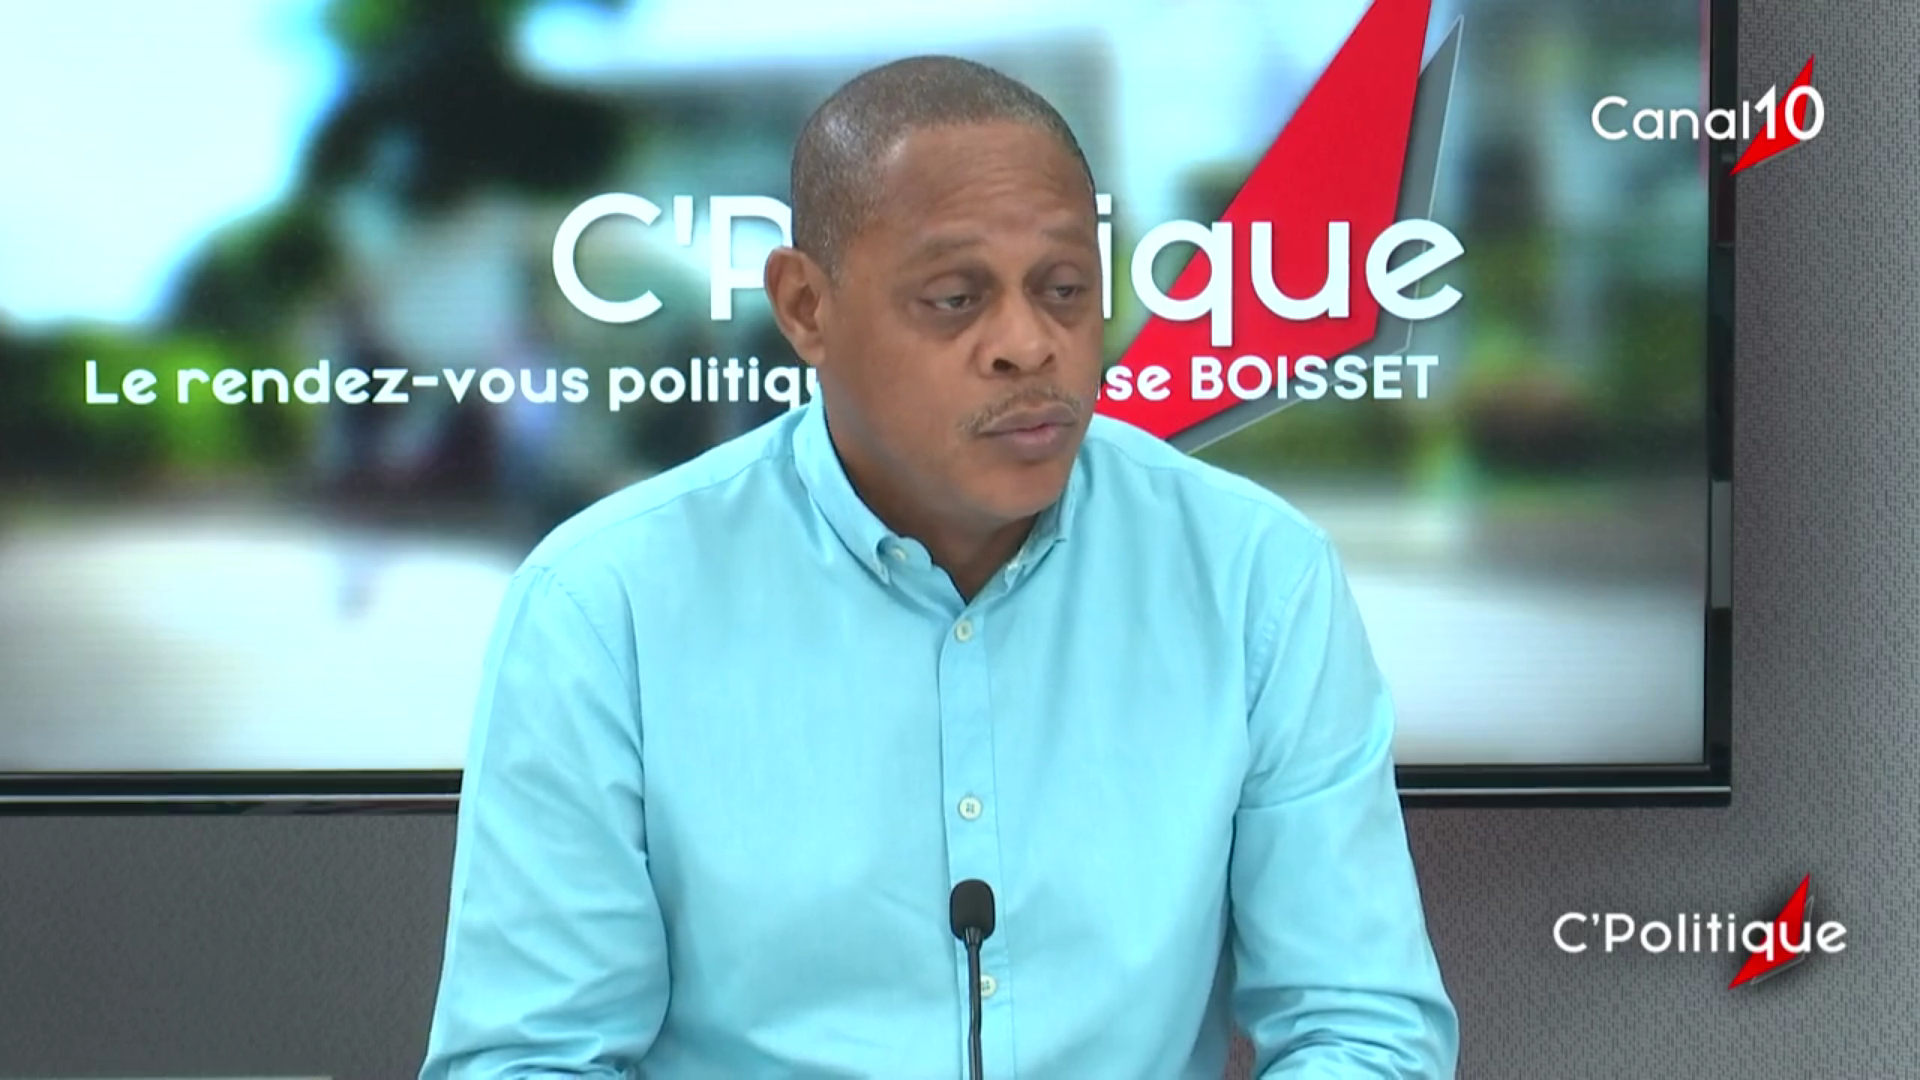 [Vidéo] Onews Guadeloupe. Christian BAPTISTE Maire de Sainte anne Invité de C Politique (canal 10)